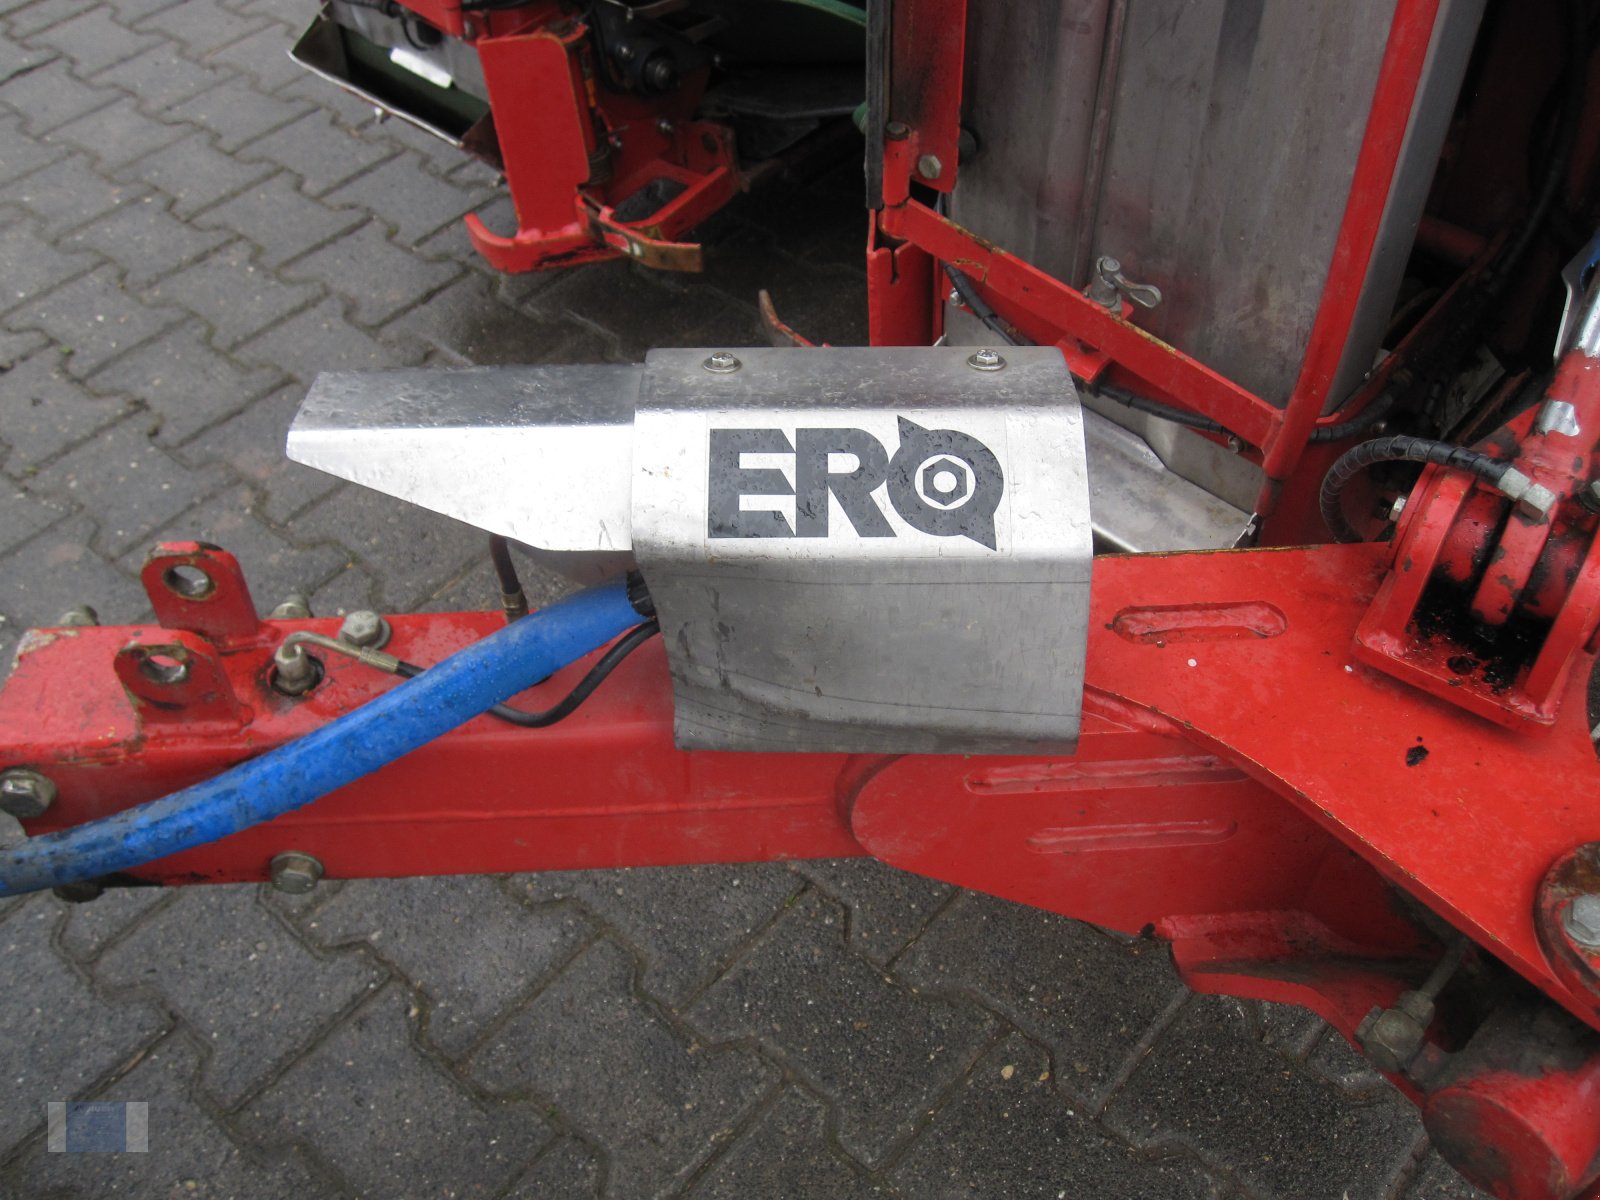 Traubenvollernter des Typs Ero LS Traction, Gebrauchtmaschine in Lörzweiler (Bild 4)